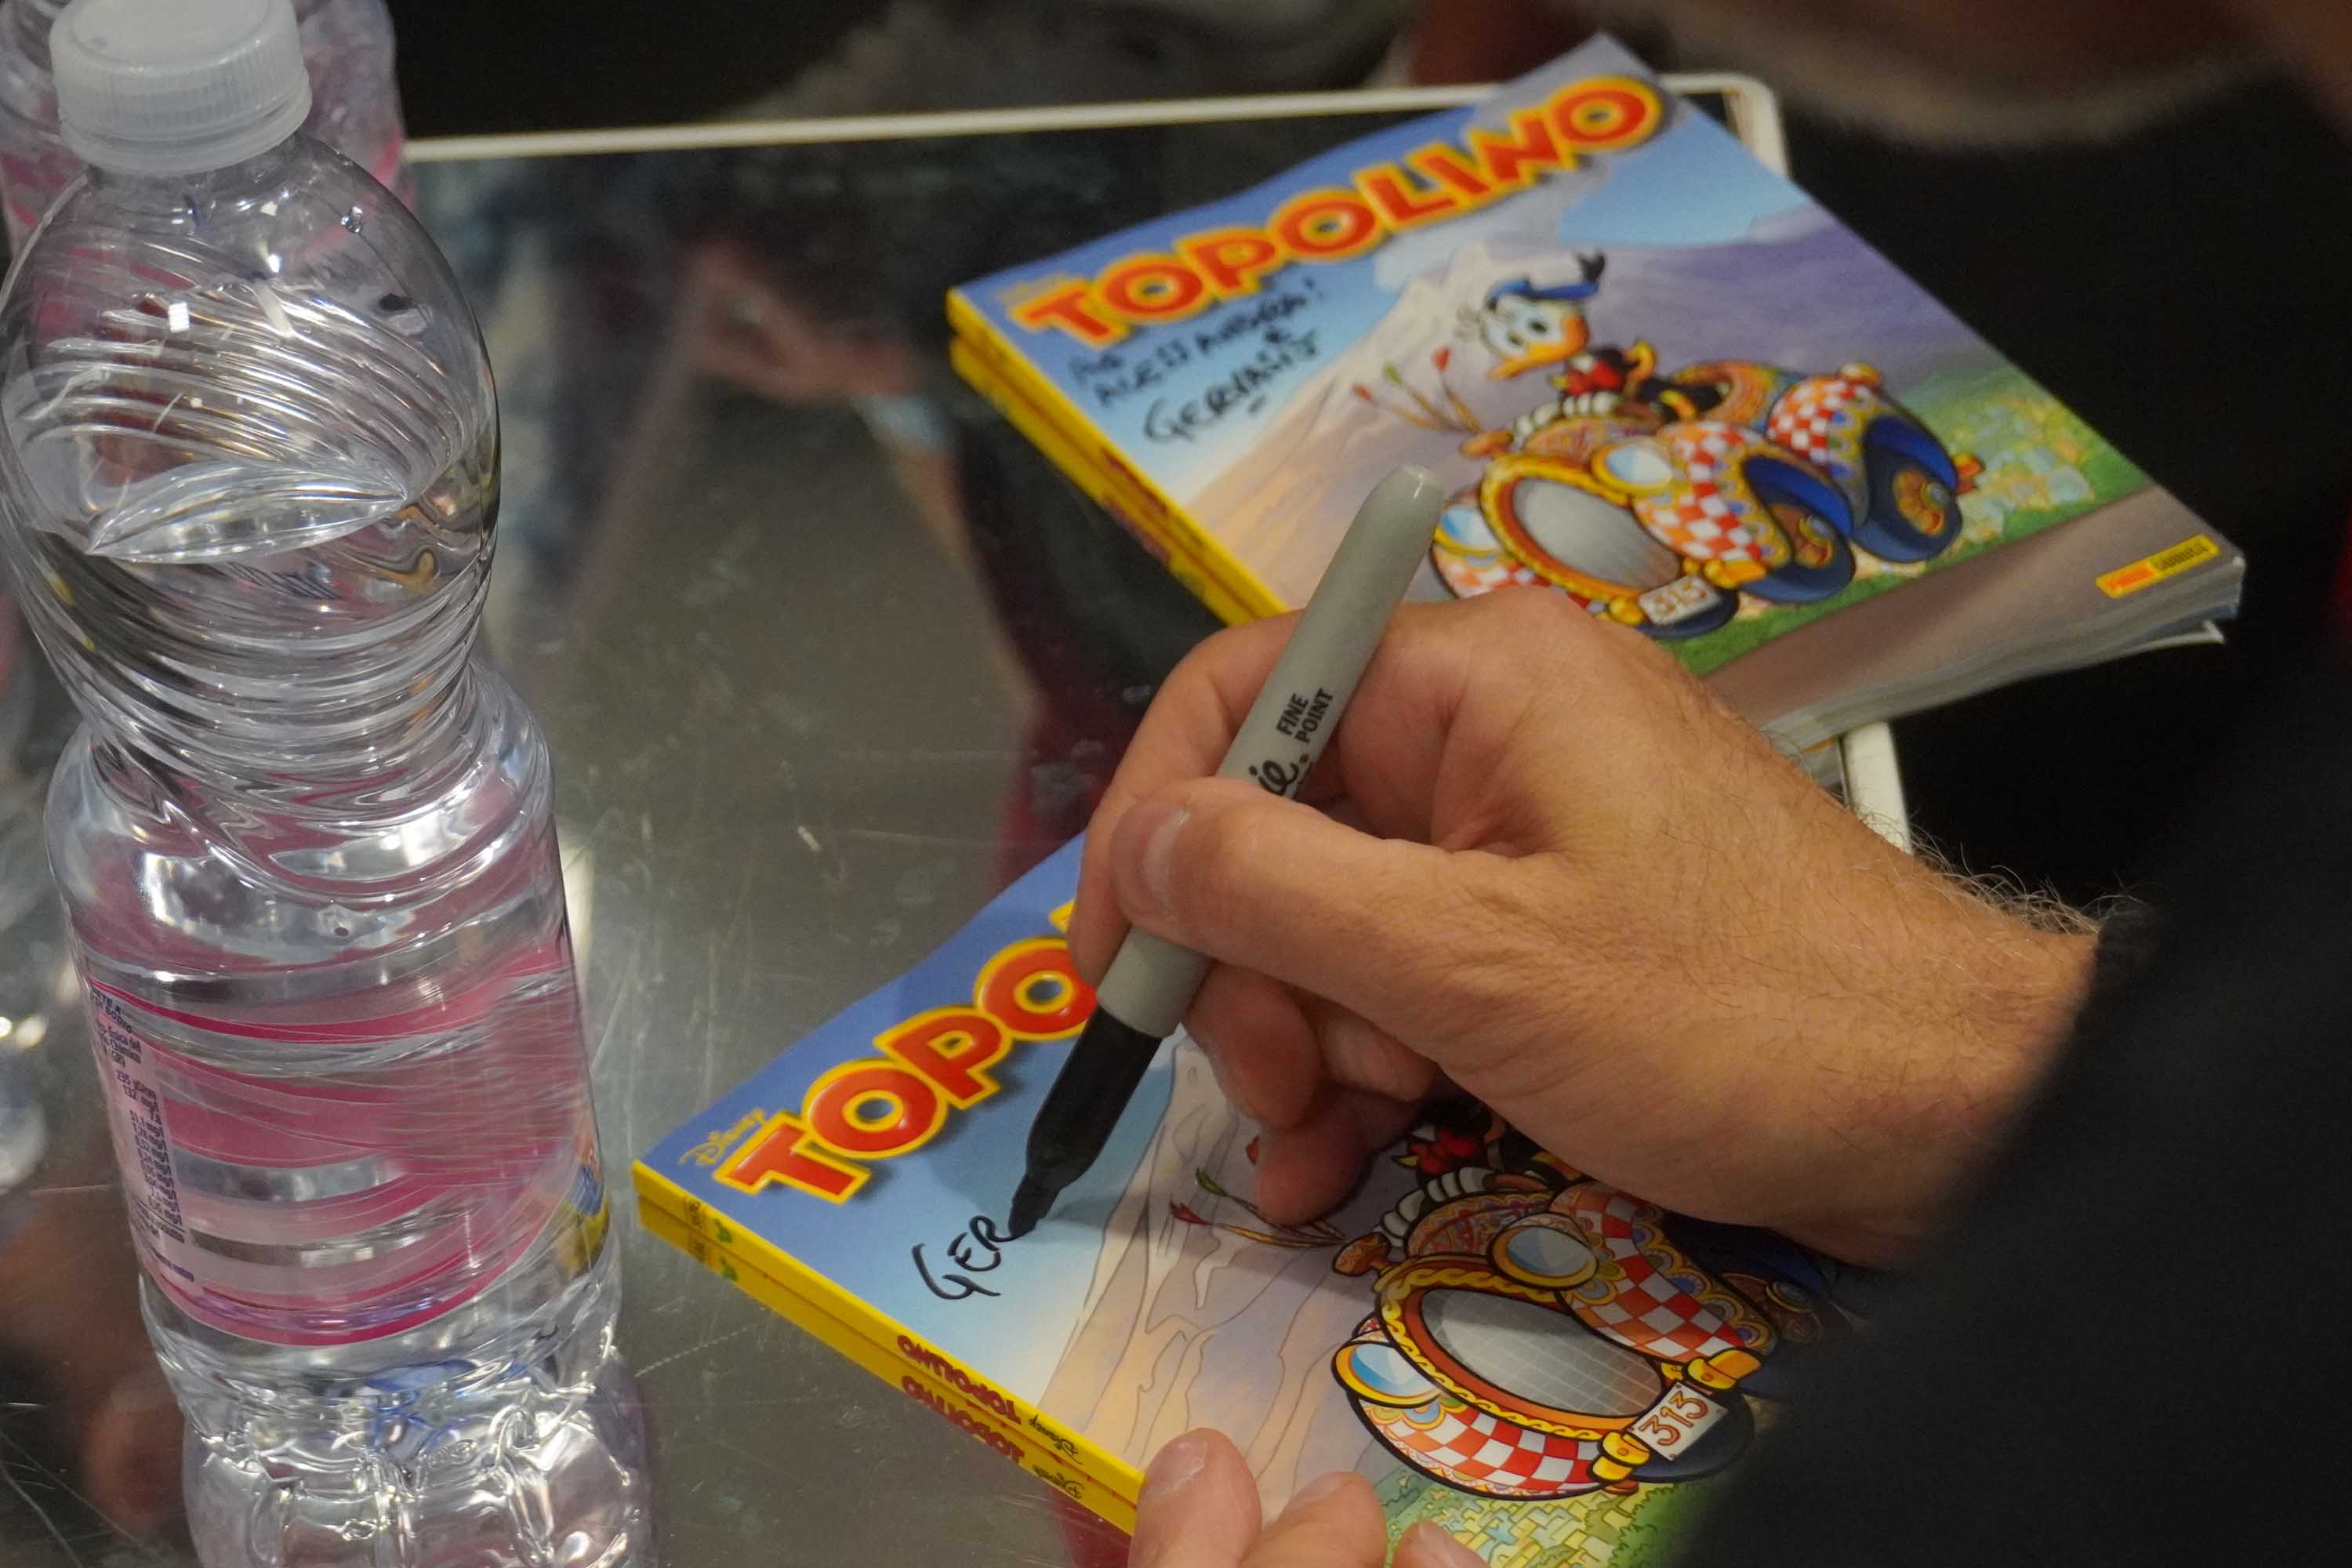 L’autore Marco Gervasio autografa alcune copie di Topolino con copertina variant